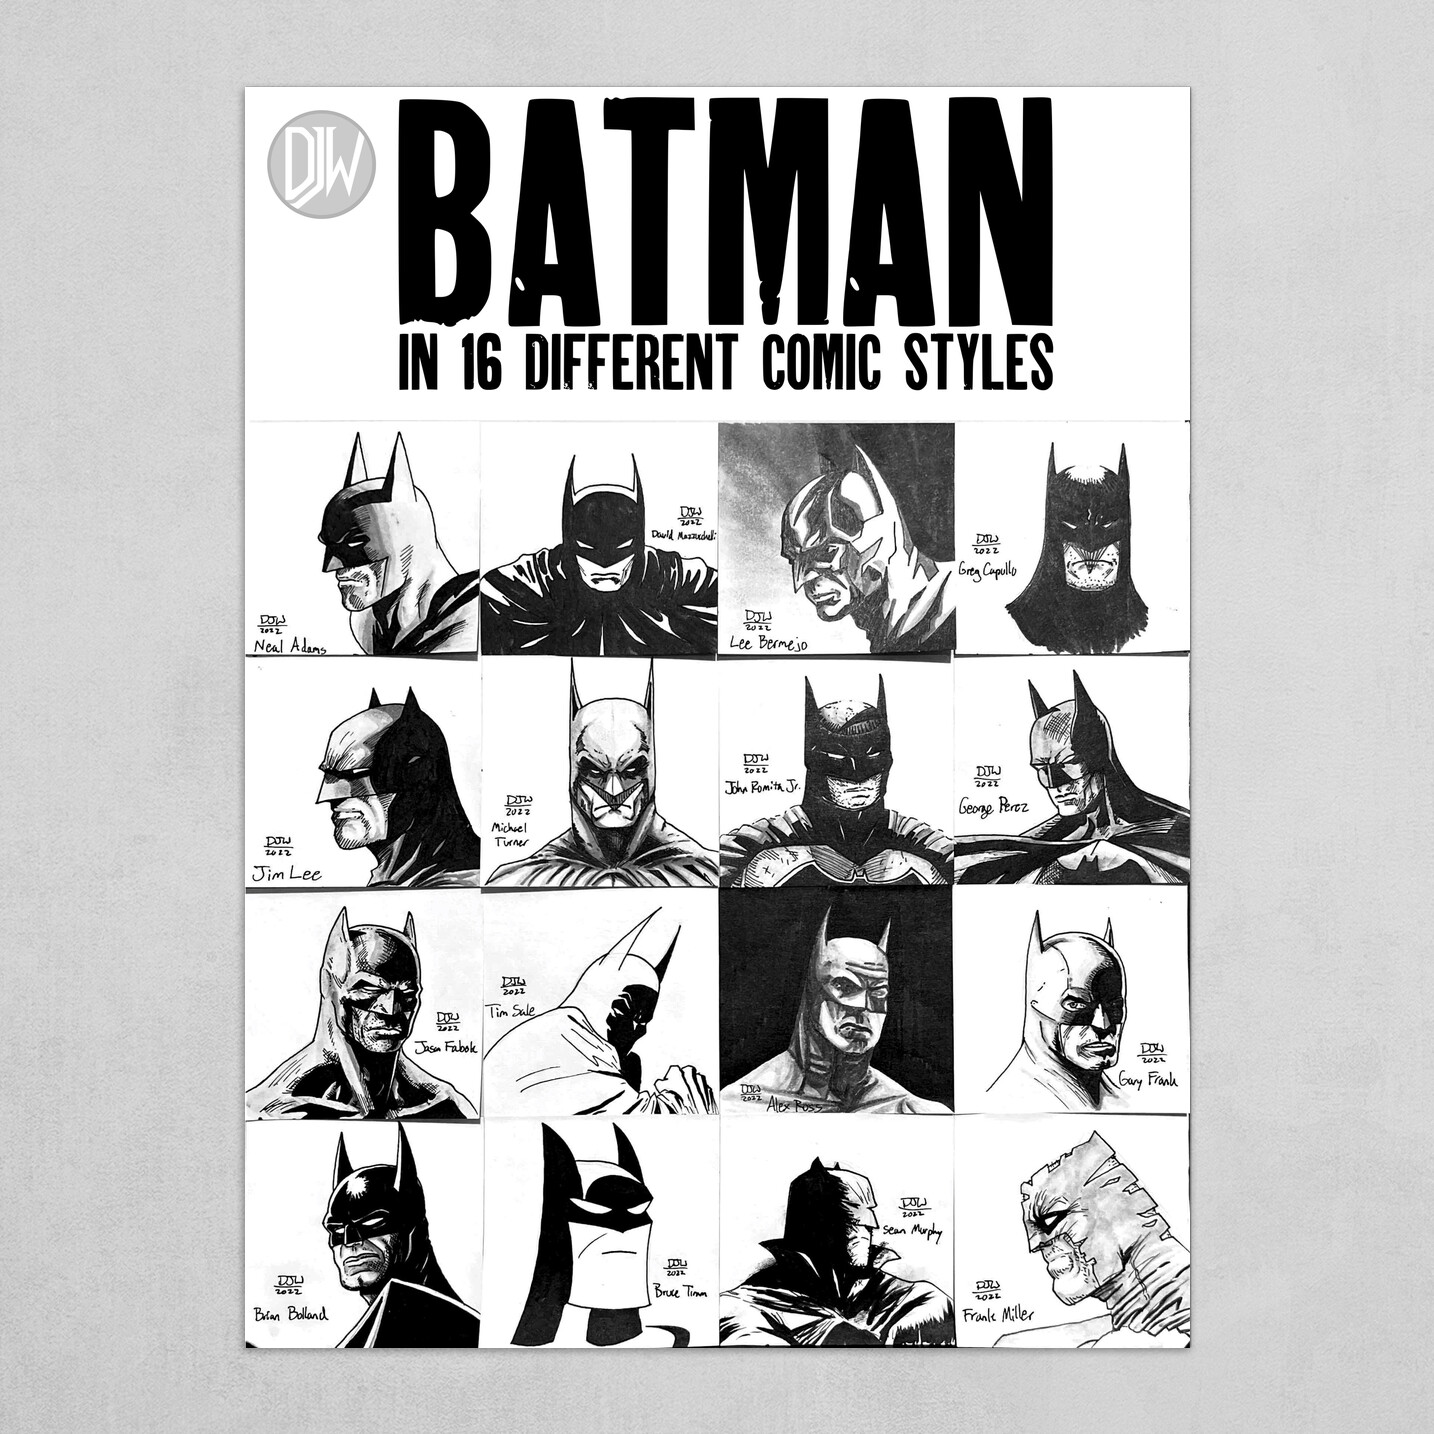 Batman in 16 Different Art Styles by DJW Art